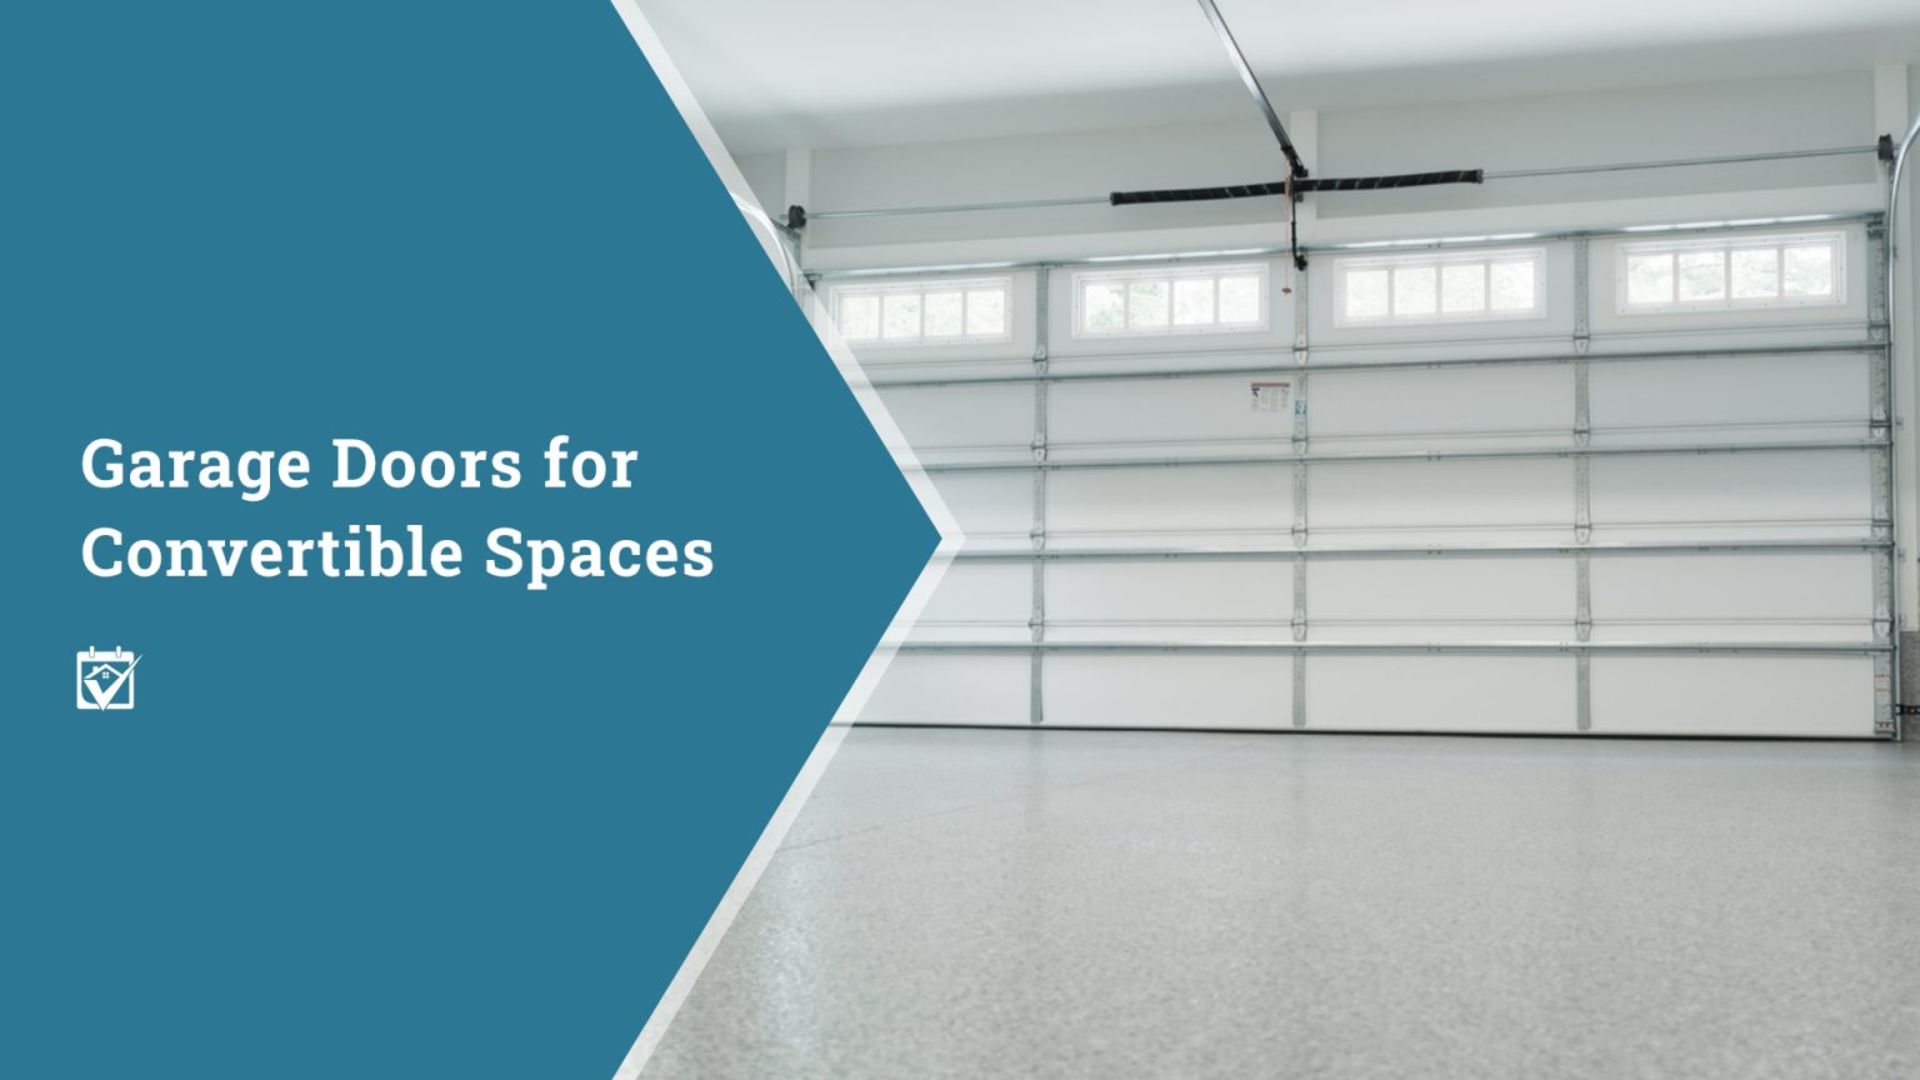 Garage Doors for Convertible Spaces